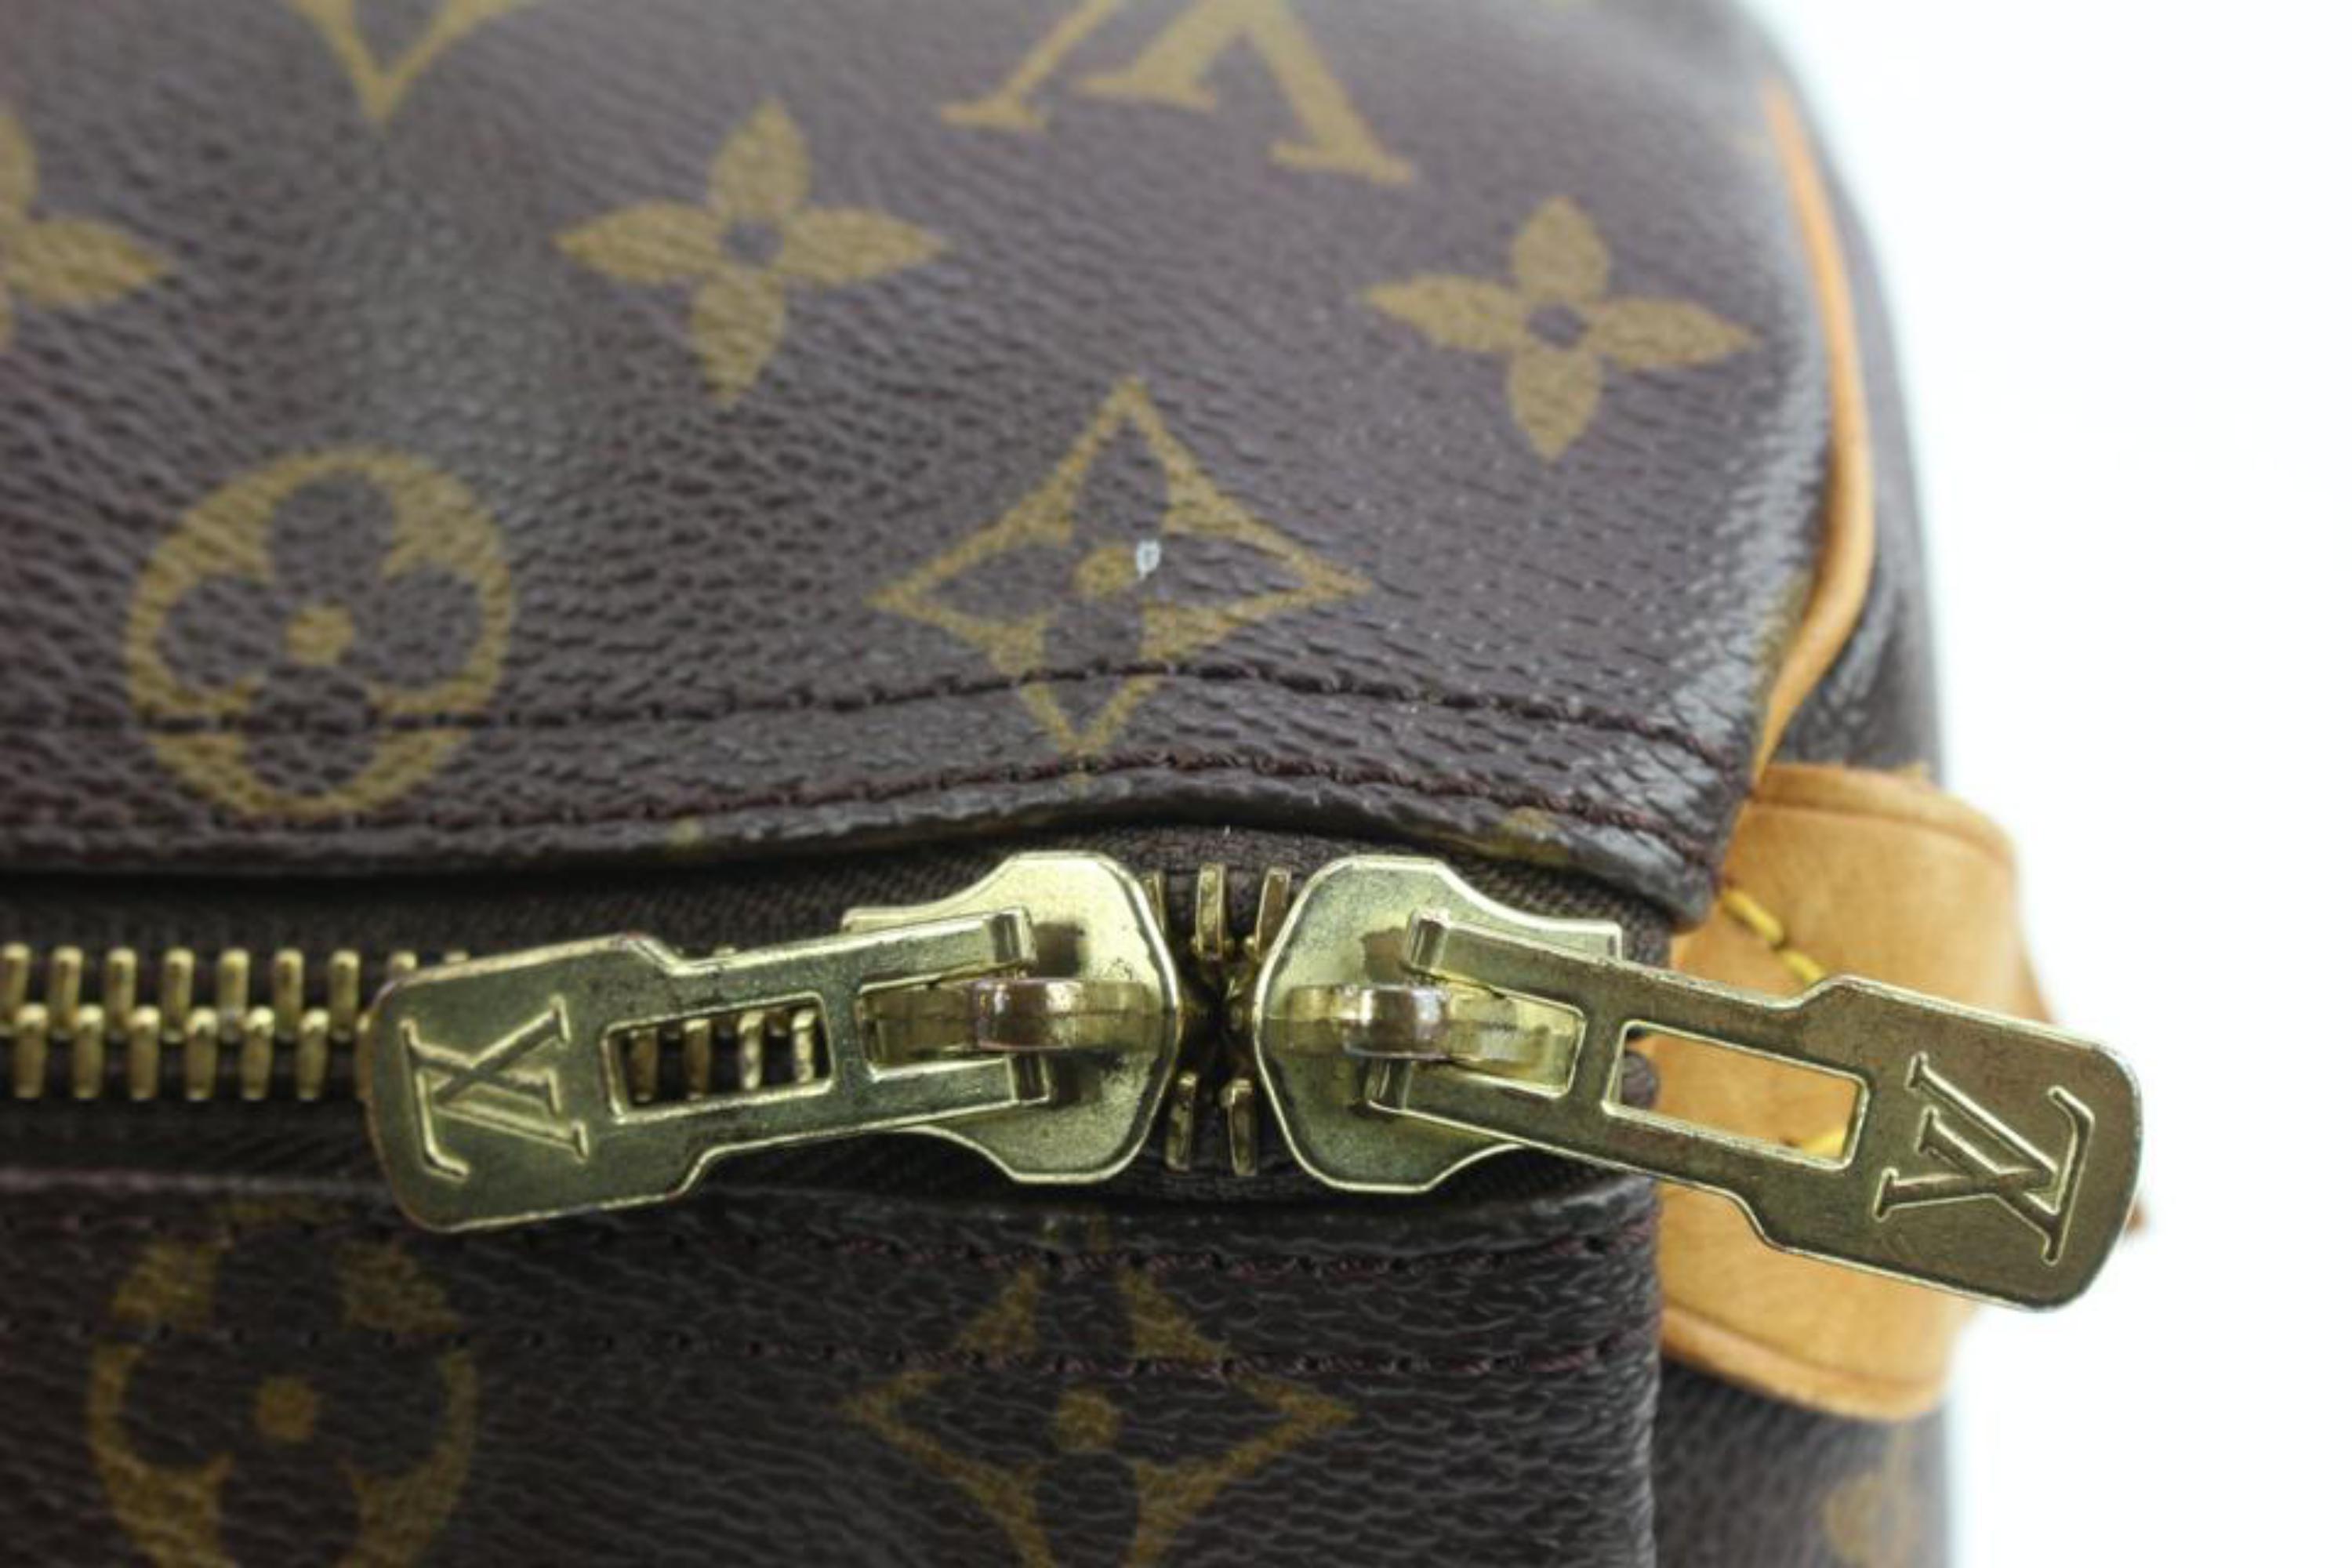 Louis Vuitton Monogram Keepall 45 Duffle Bag 7LV415a 6